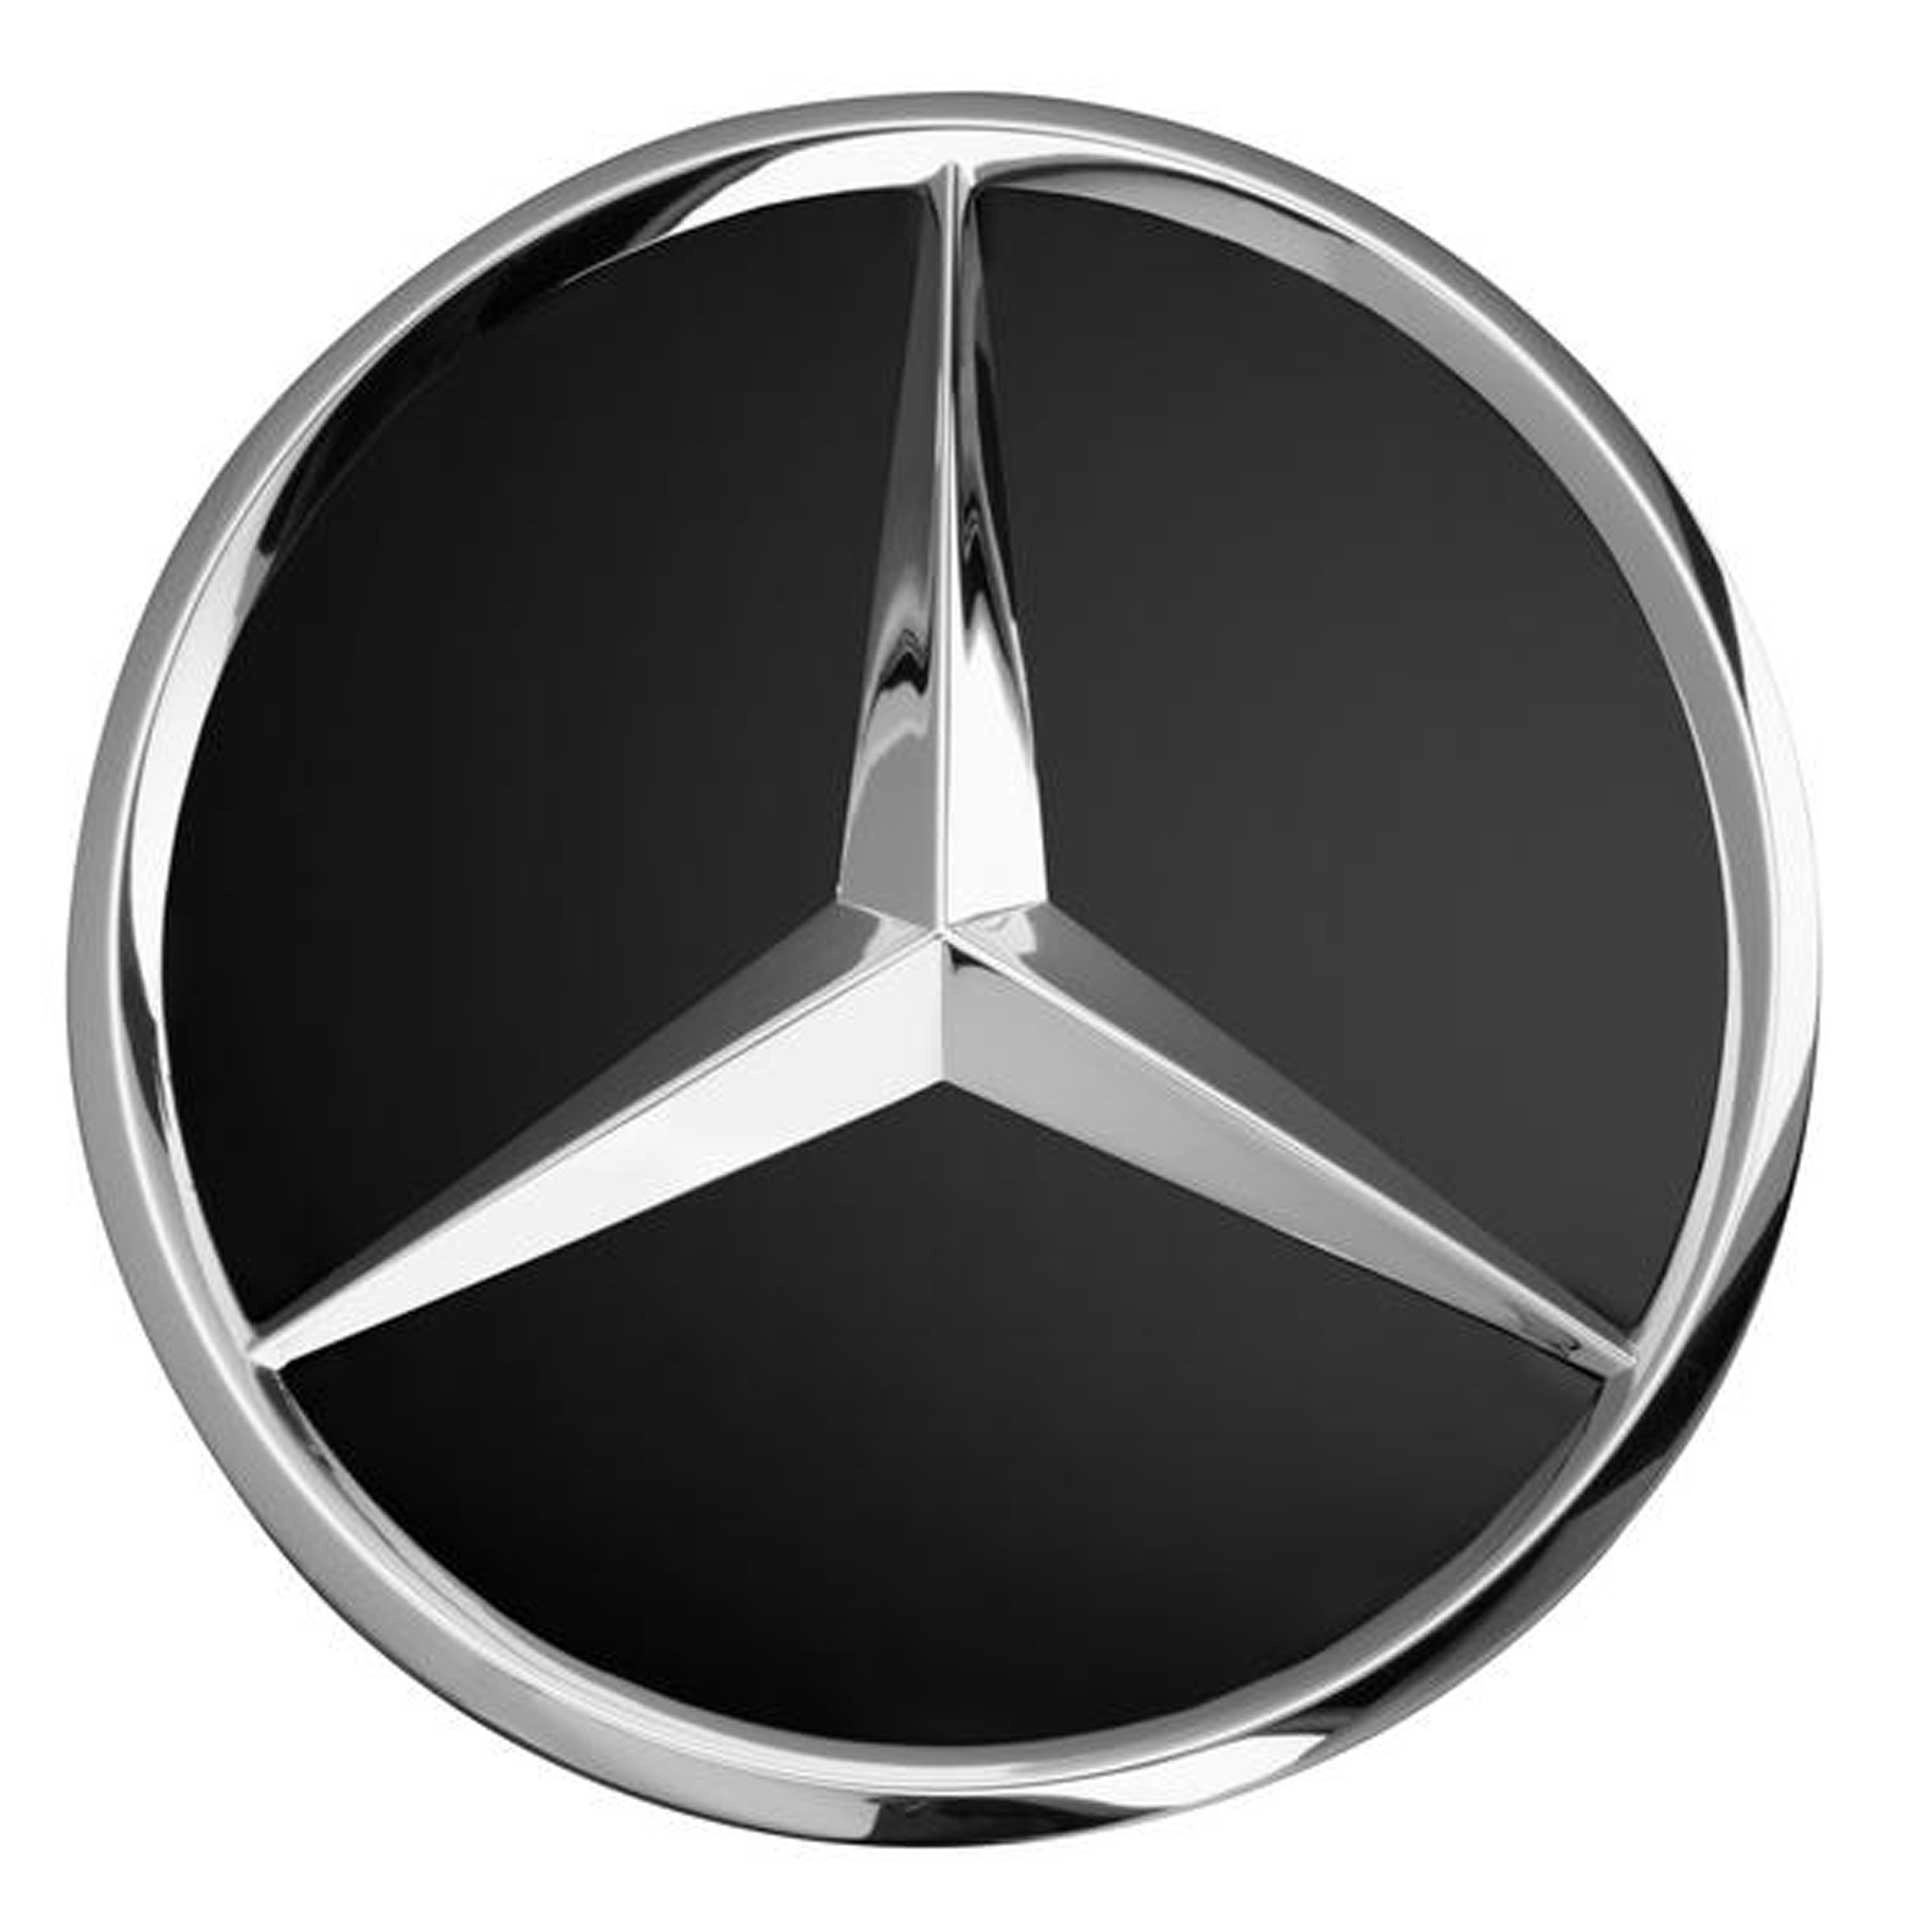 Mercedes-Benz Radnabenabdeckung Stern schwarz